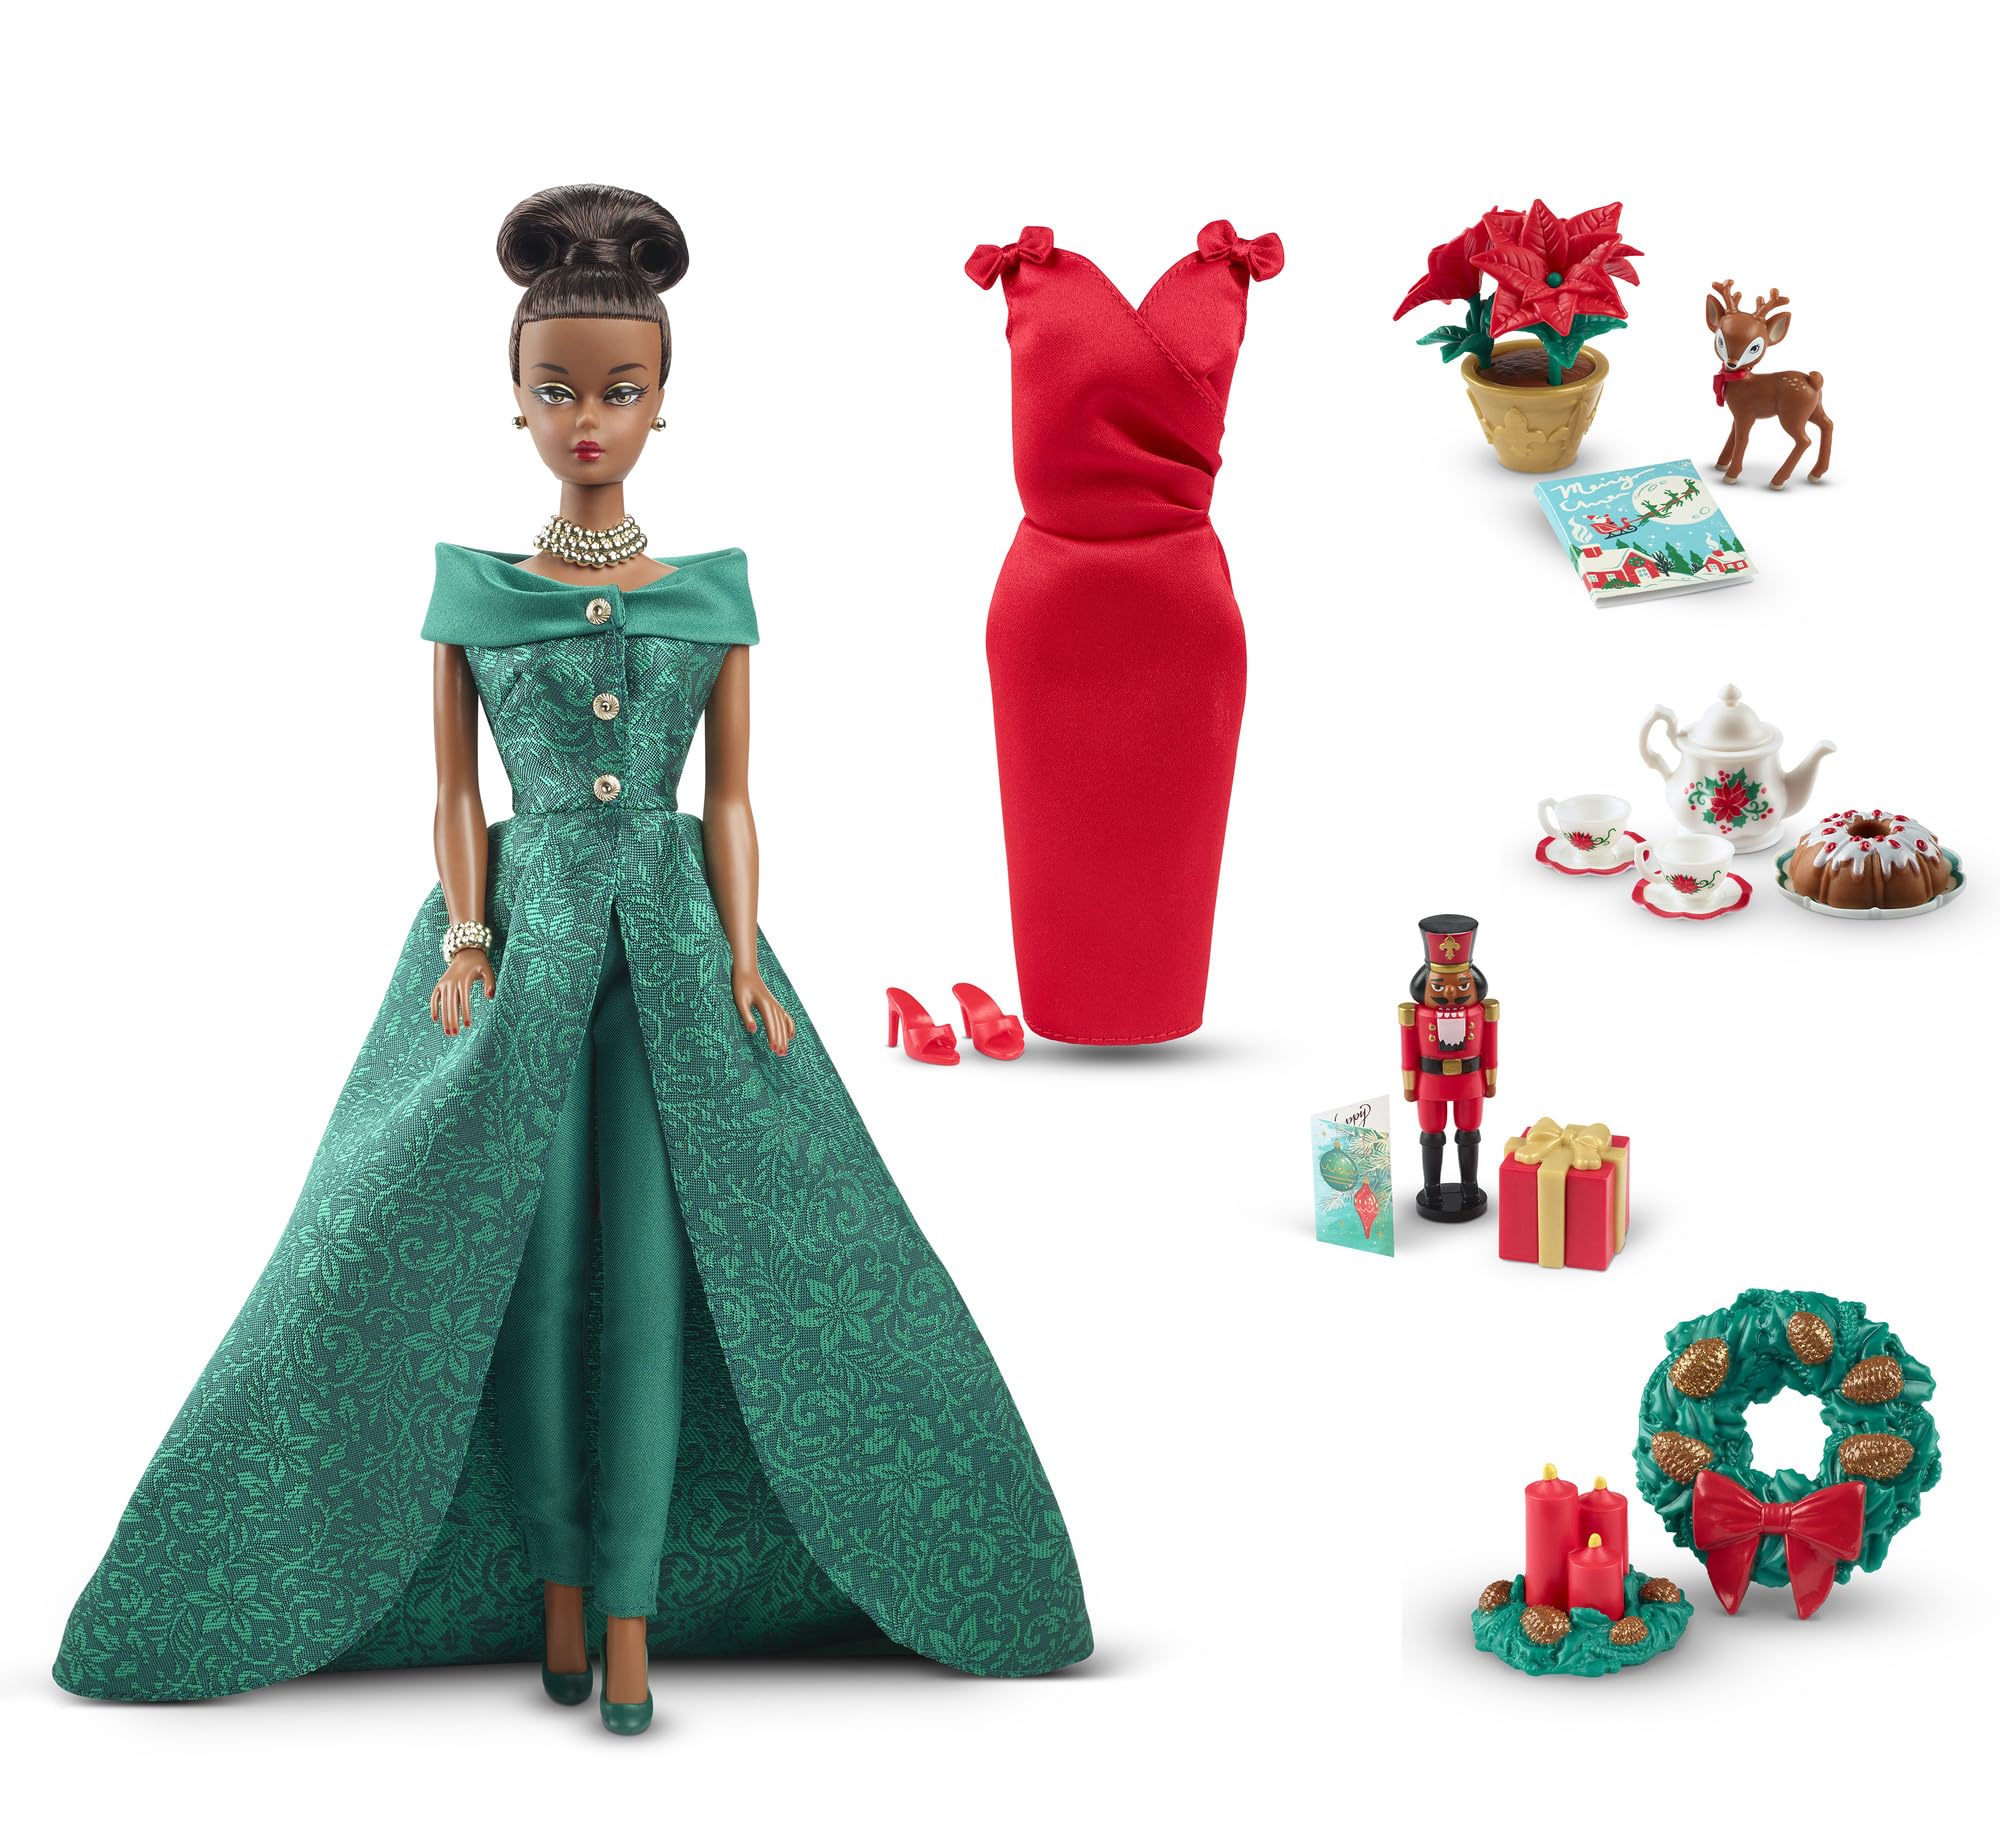 バービー(Barbie) 12 デイズ クリスマスカレンダー 2着せ替え人形・ドール シグネチャーGOLD 大人向け(18歳以上） HJX13